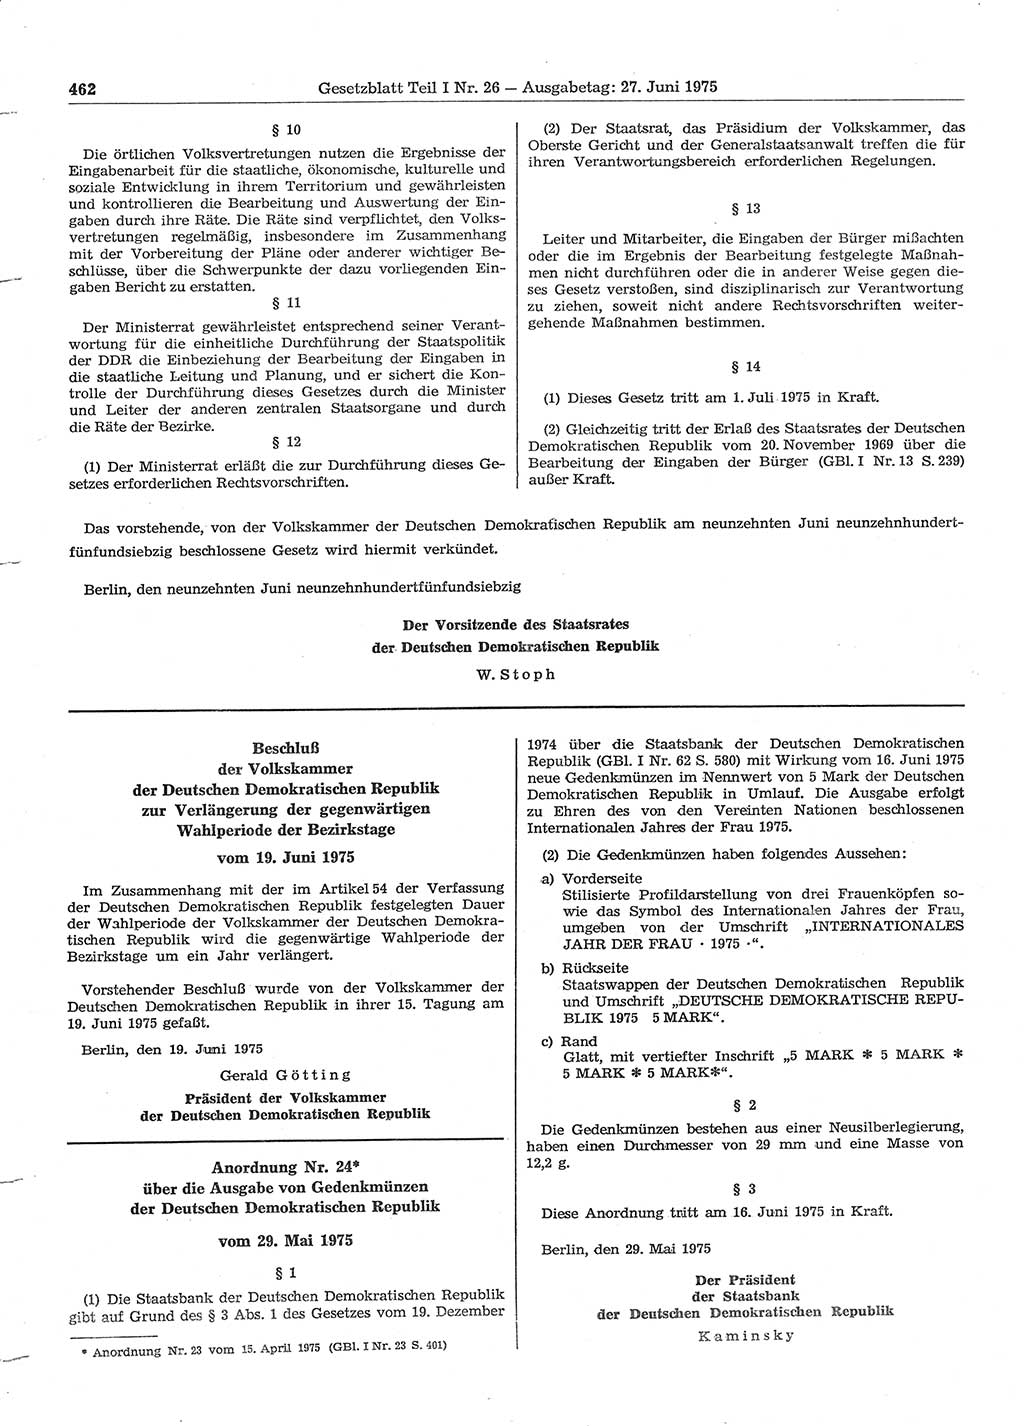 Gesetzblatt (GBl.) der Deutschen Demokratischen Republik (DDR) Teil Ⅰ 1975, Seite 462 (GBl. DDR Ⅰ 1975, S. 462)